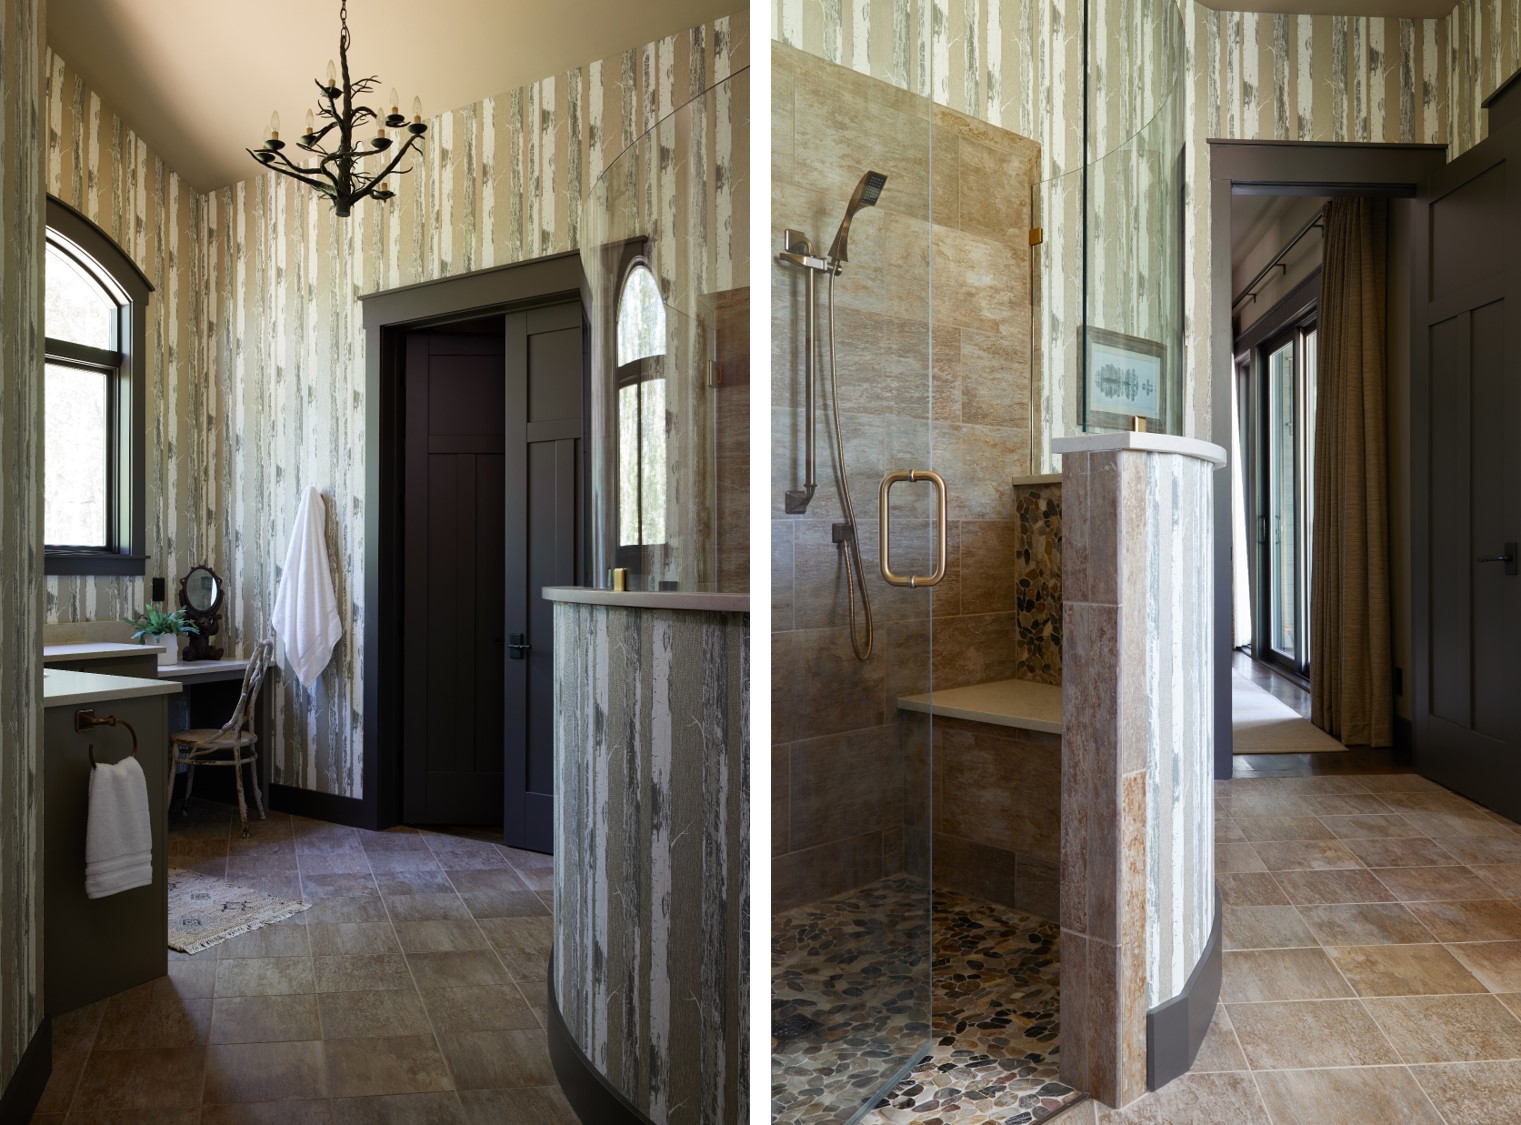 Cabin bathroom. Rustic Bathroom with natural design.